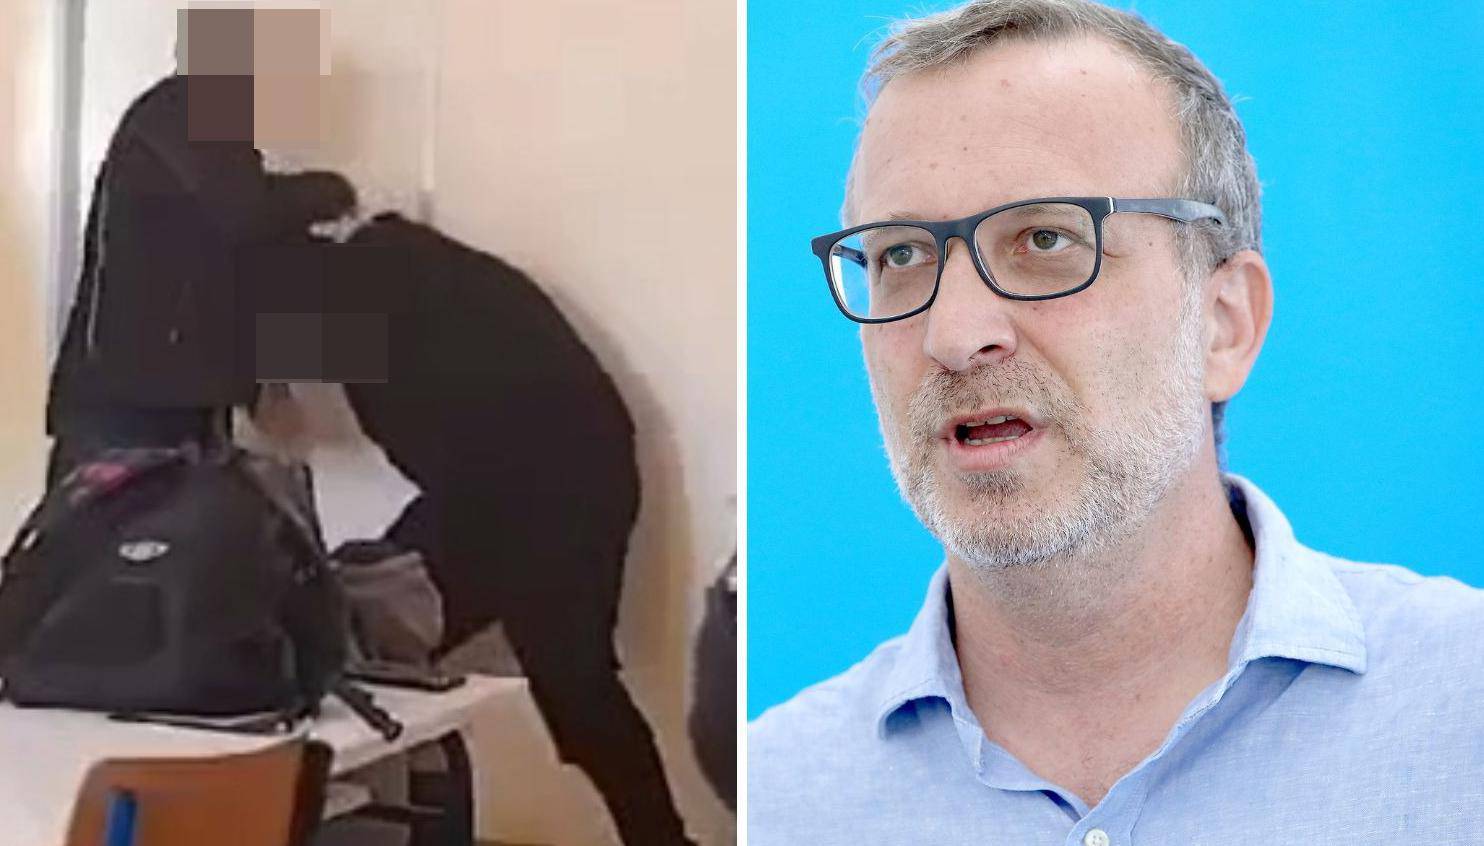 Zagrebački profesor: Sustav ne štiti učitelje. Maltretirali su ga! Kazna za učenike? Toga nema